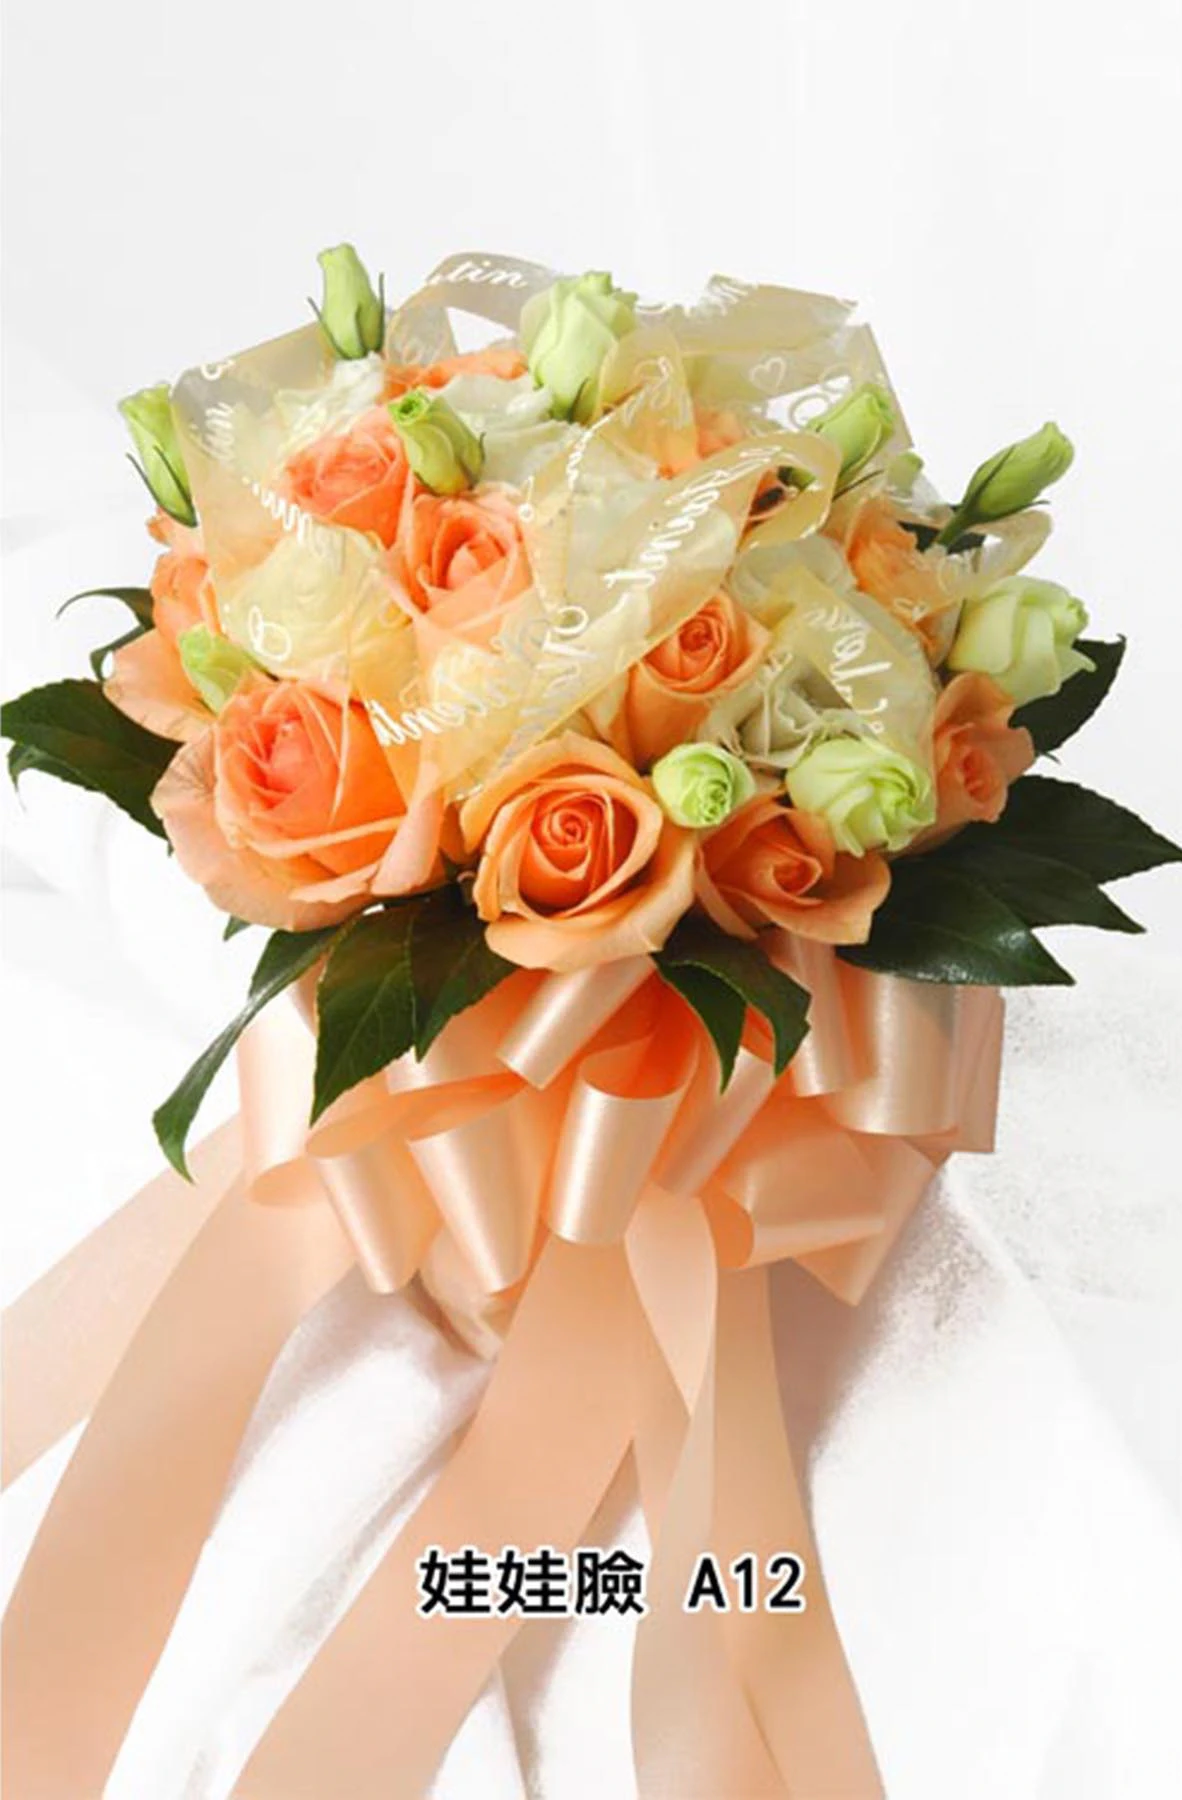 新娘捧花-花材有香檳玫瑰花,桔梗,緞帶,花束型